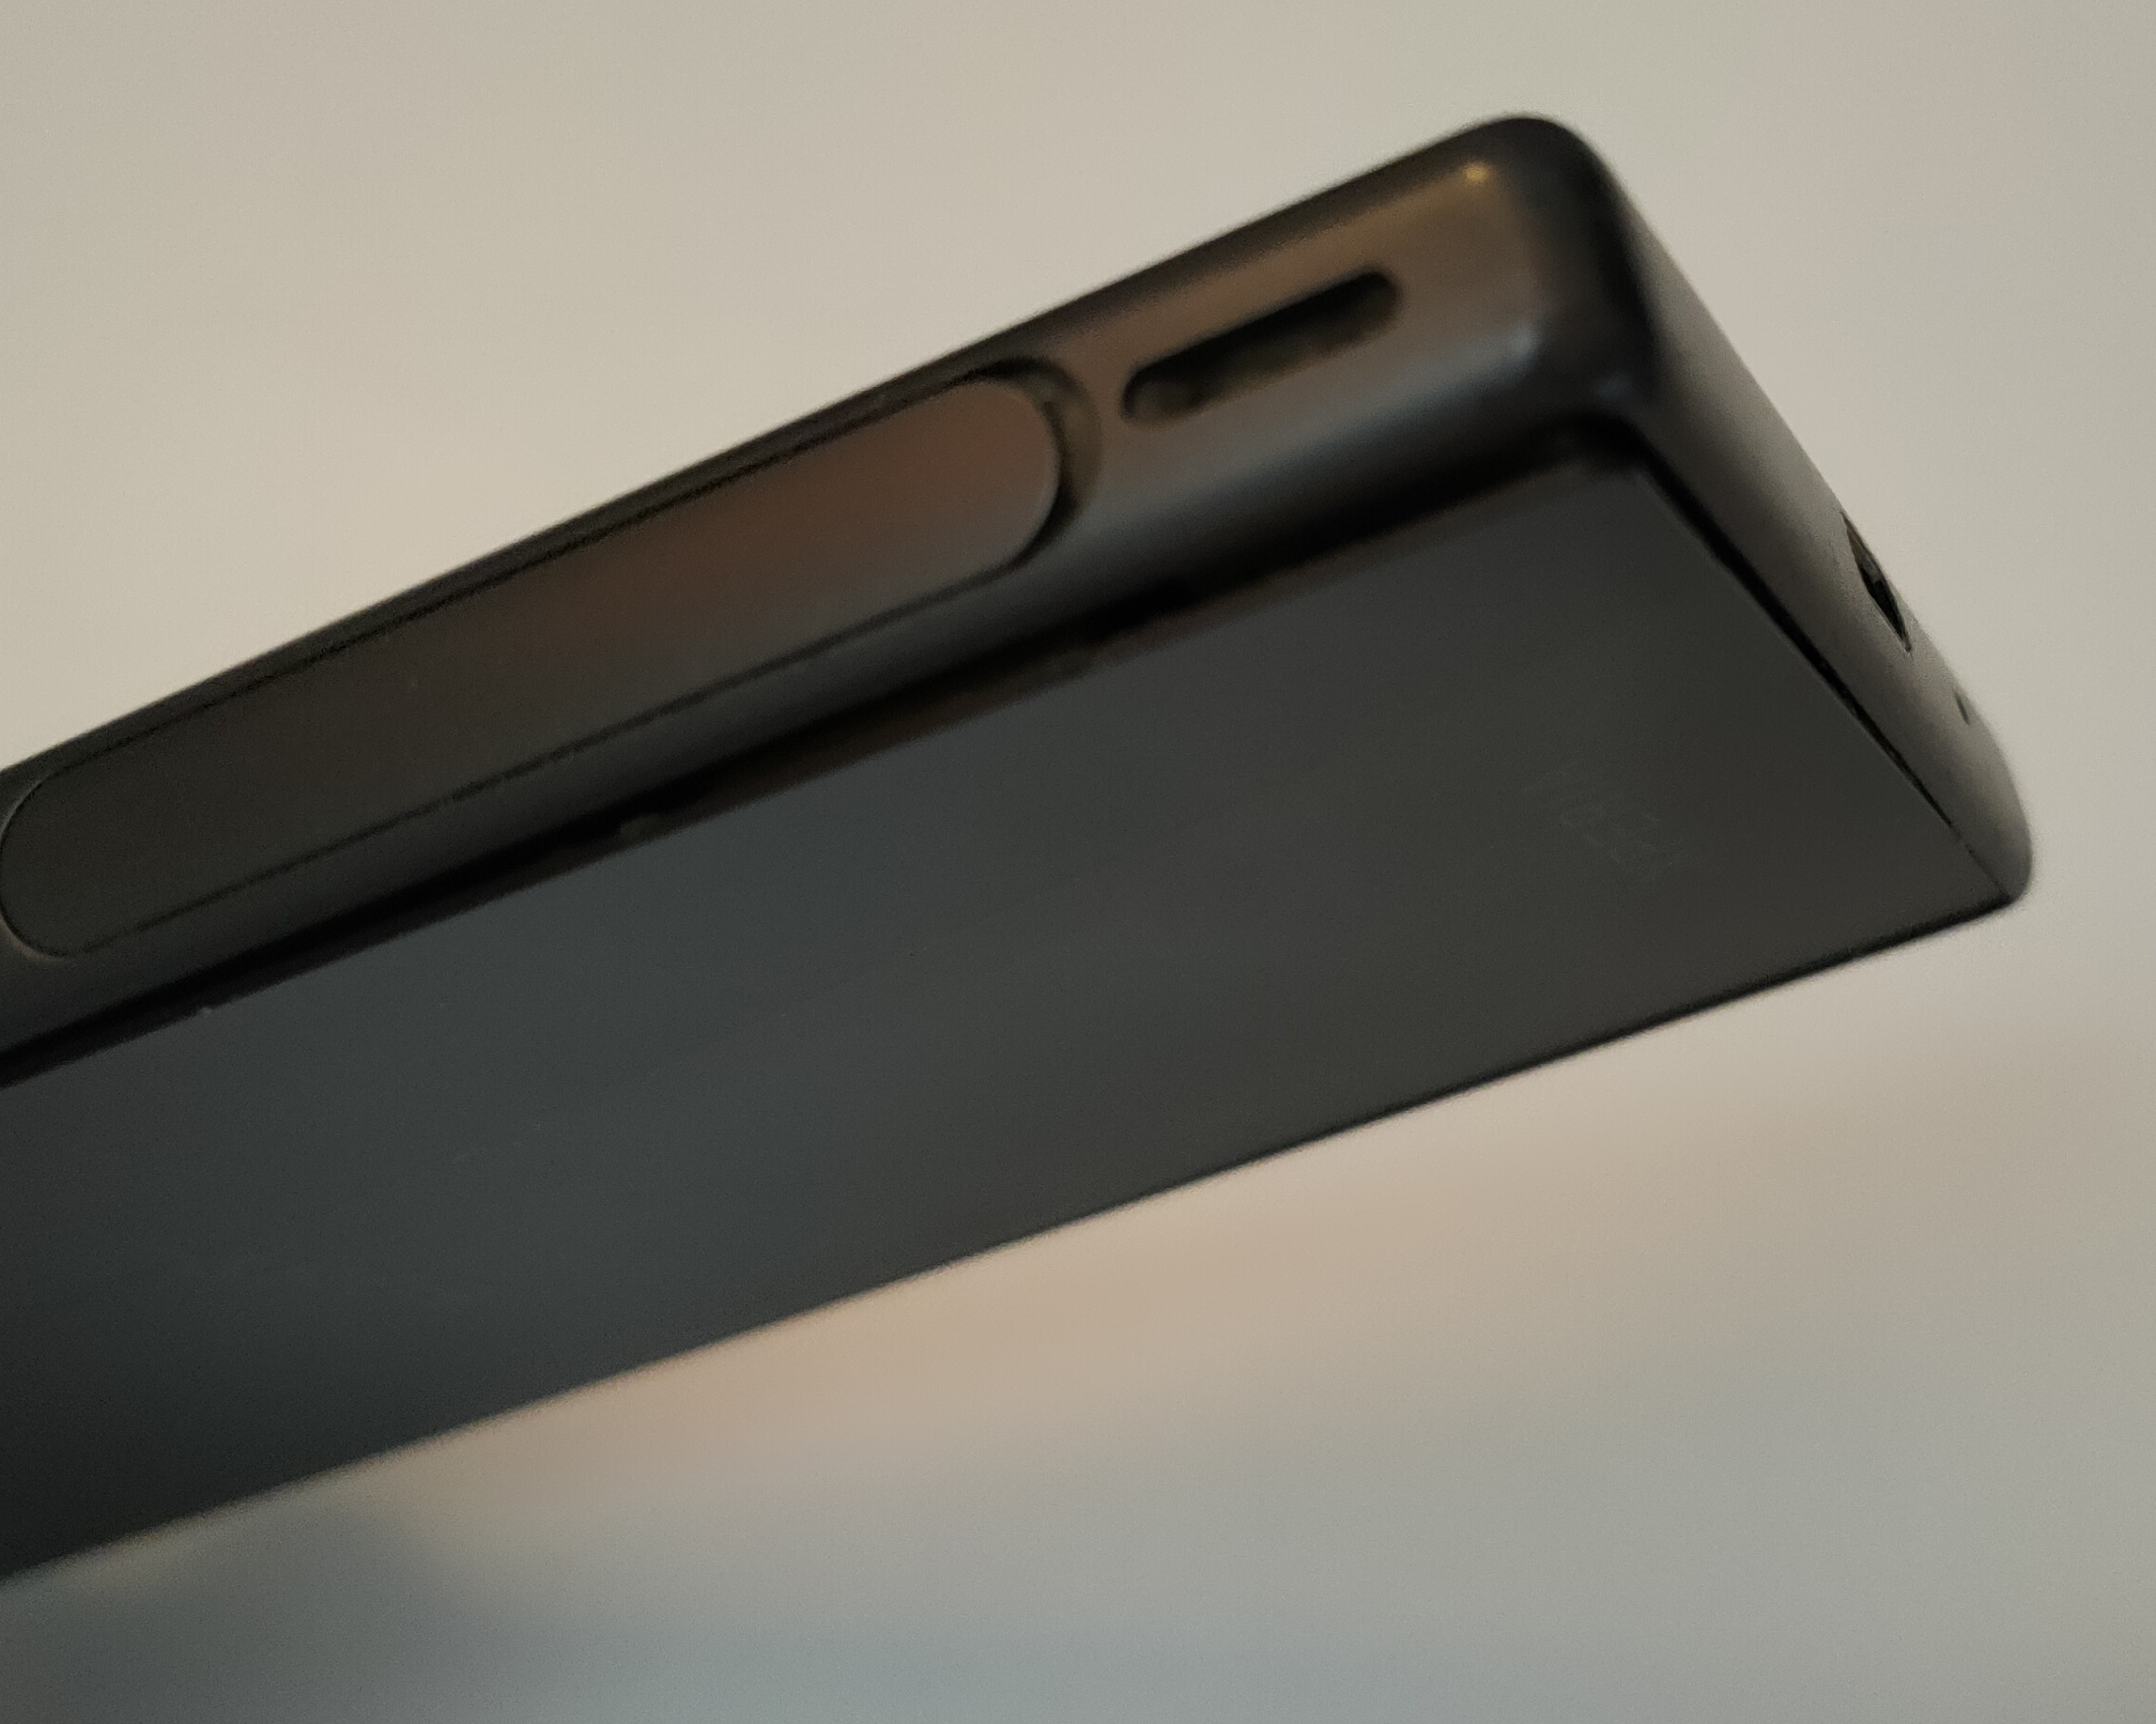 Plaque arrière de mon Xperia Z5 compact qui dépasse, à côté de la prise micro-usb